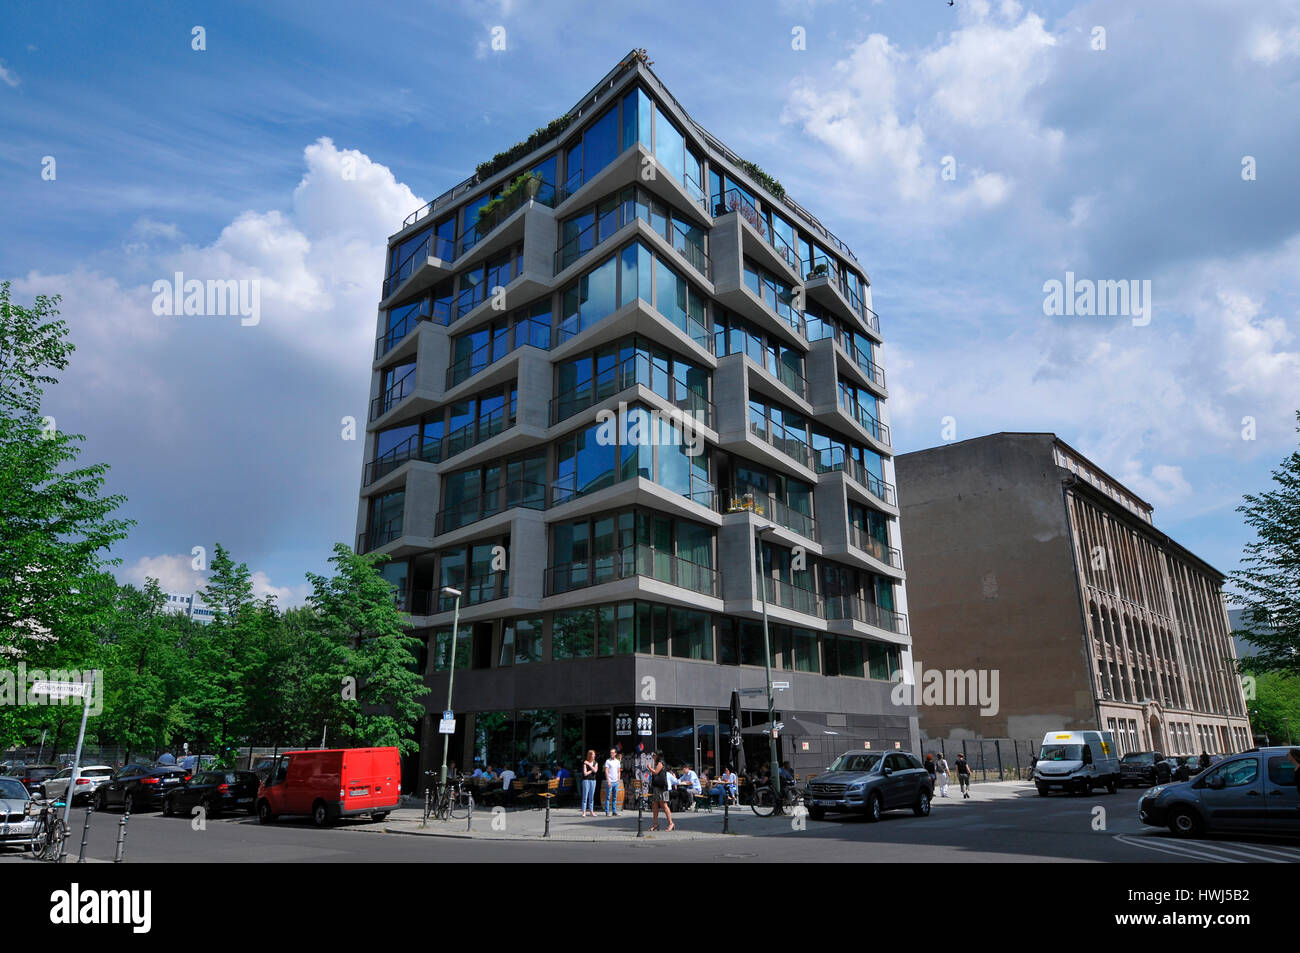 Apartmenthaus, Charlottenstrasse 19, Mitte, Berlin, Deutschland Foto de stock